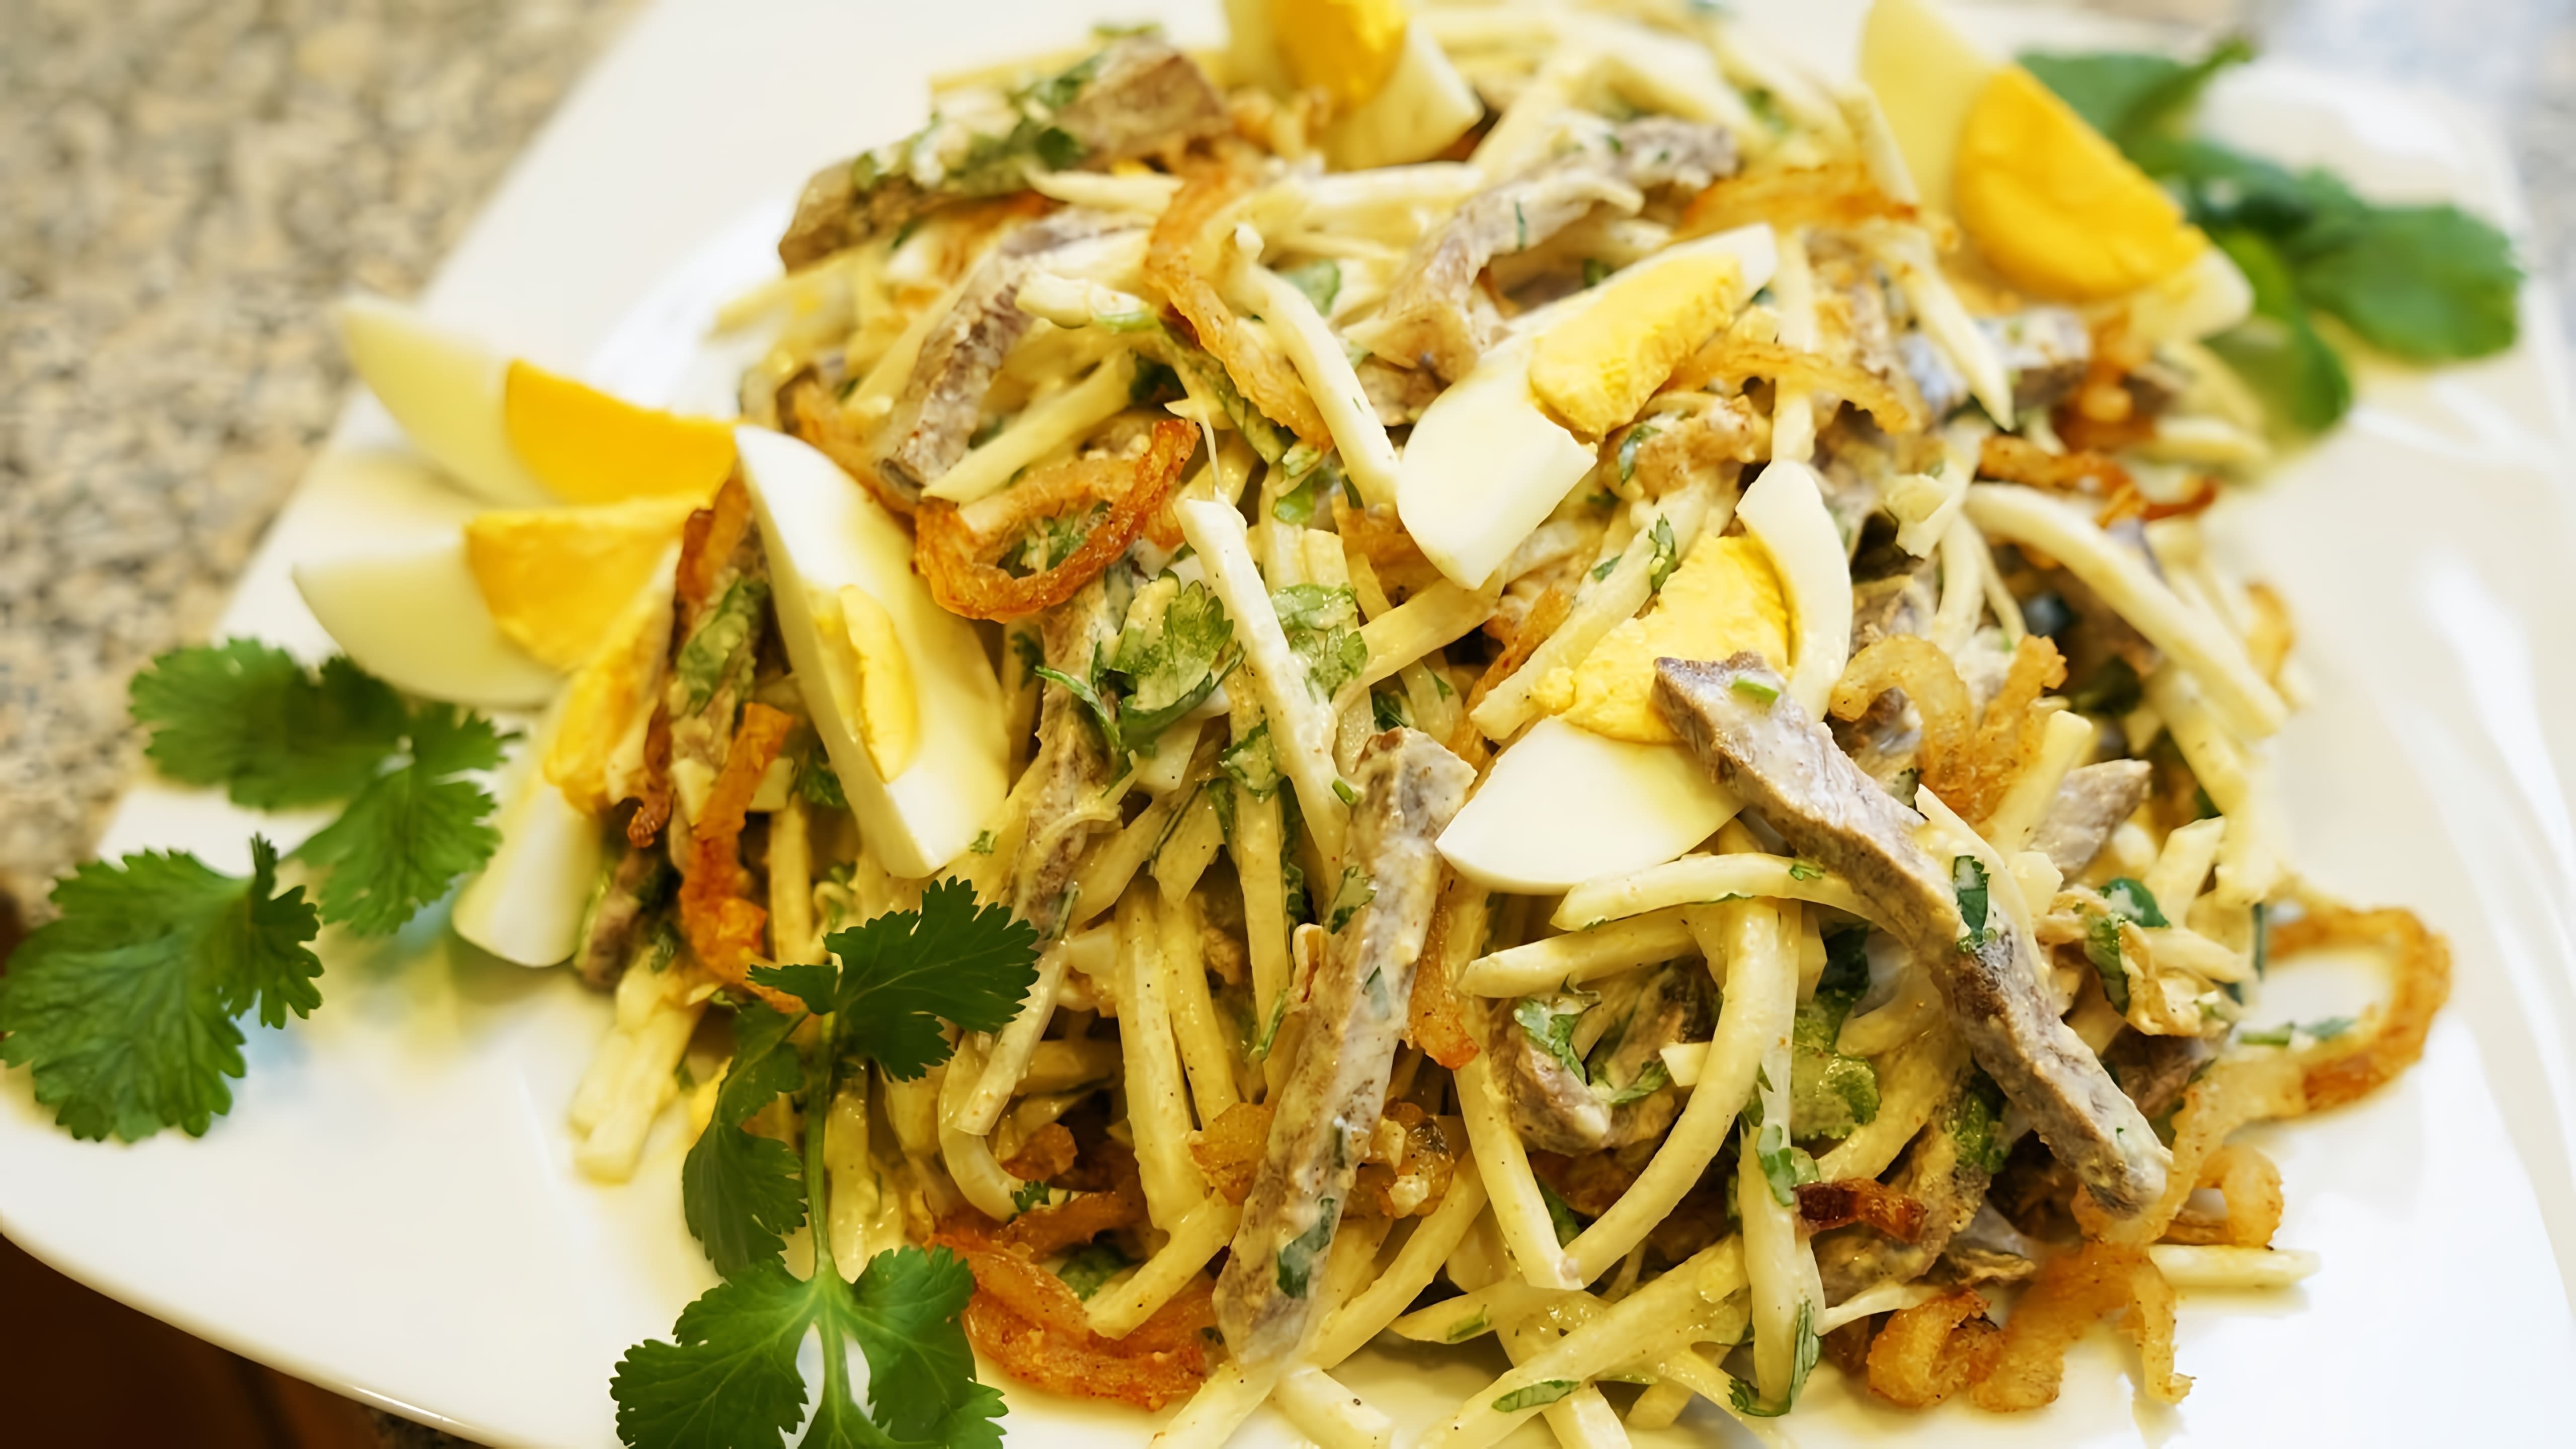 В этом видео демонстрируется рецепт салата "Ташкент" или "Салат Узбекистан"